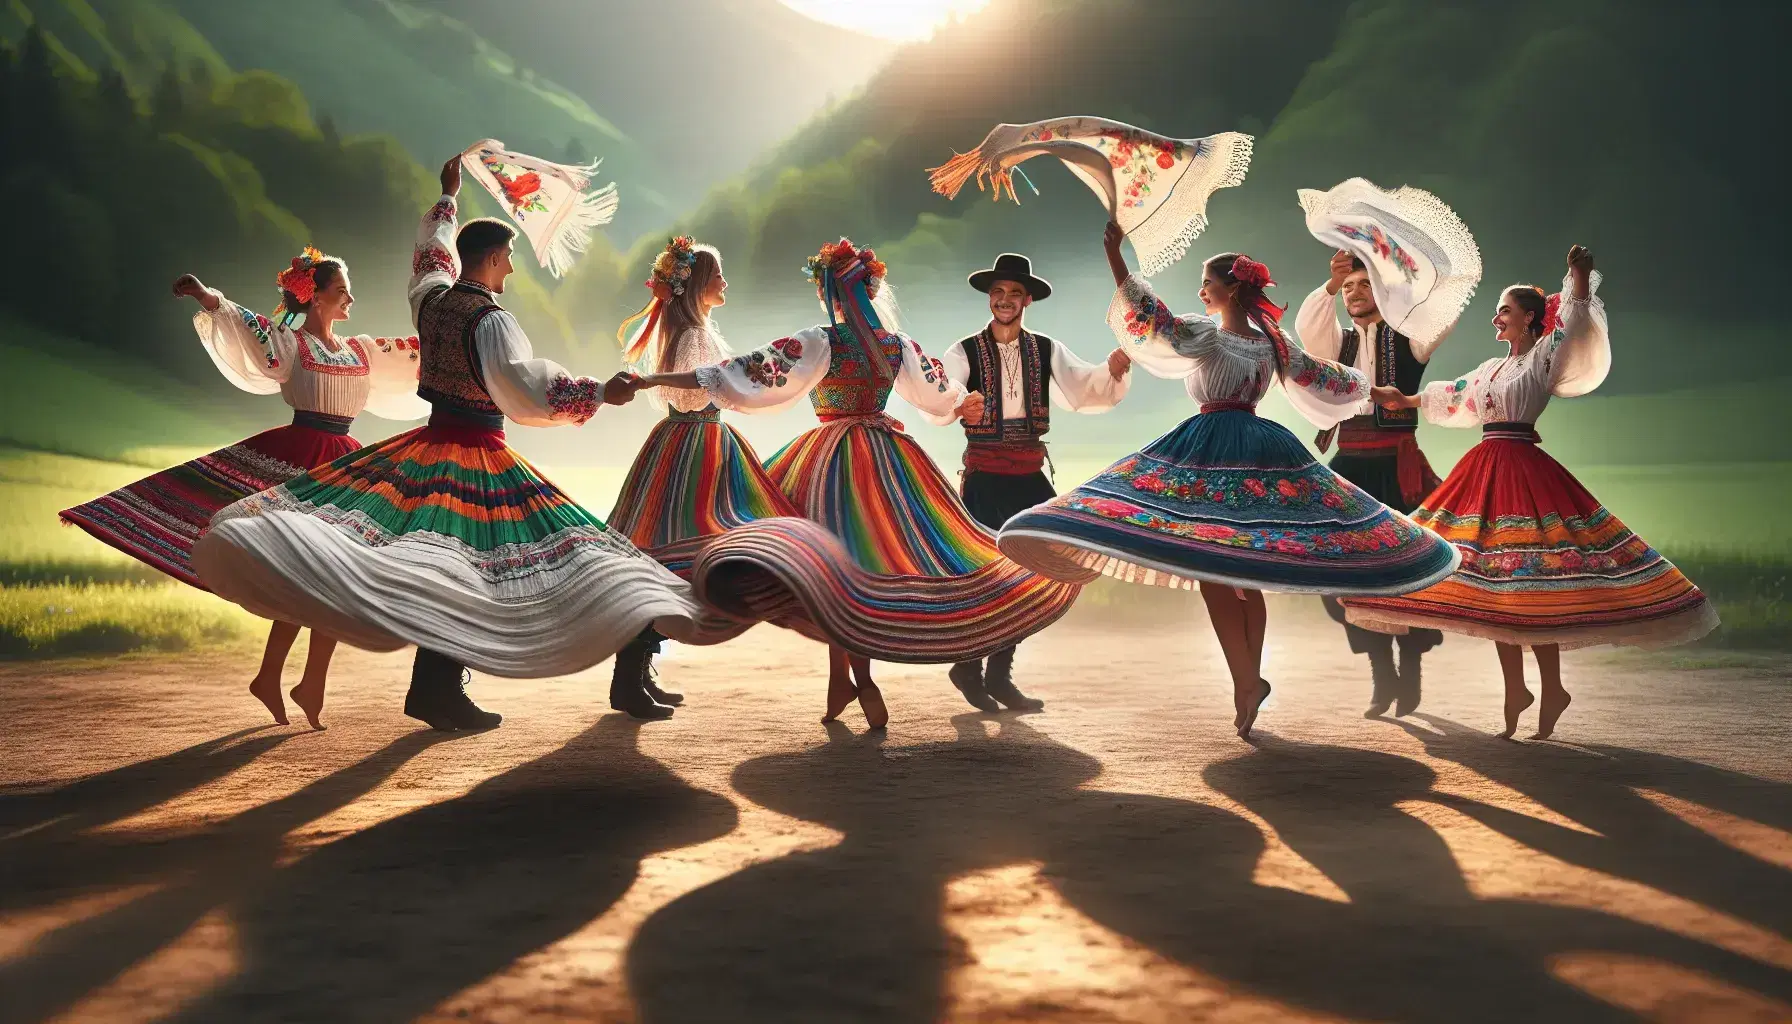 Grupo de cinco personas realizando danza folclórica en trajes tradicionales coloridos, con faldas amplias, chalecos bordados y sombreros, en un entorno natural soleado.